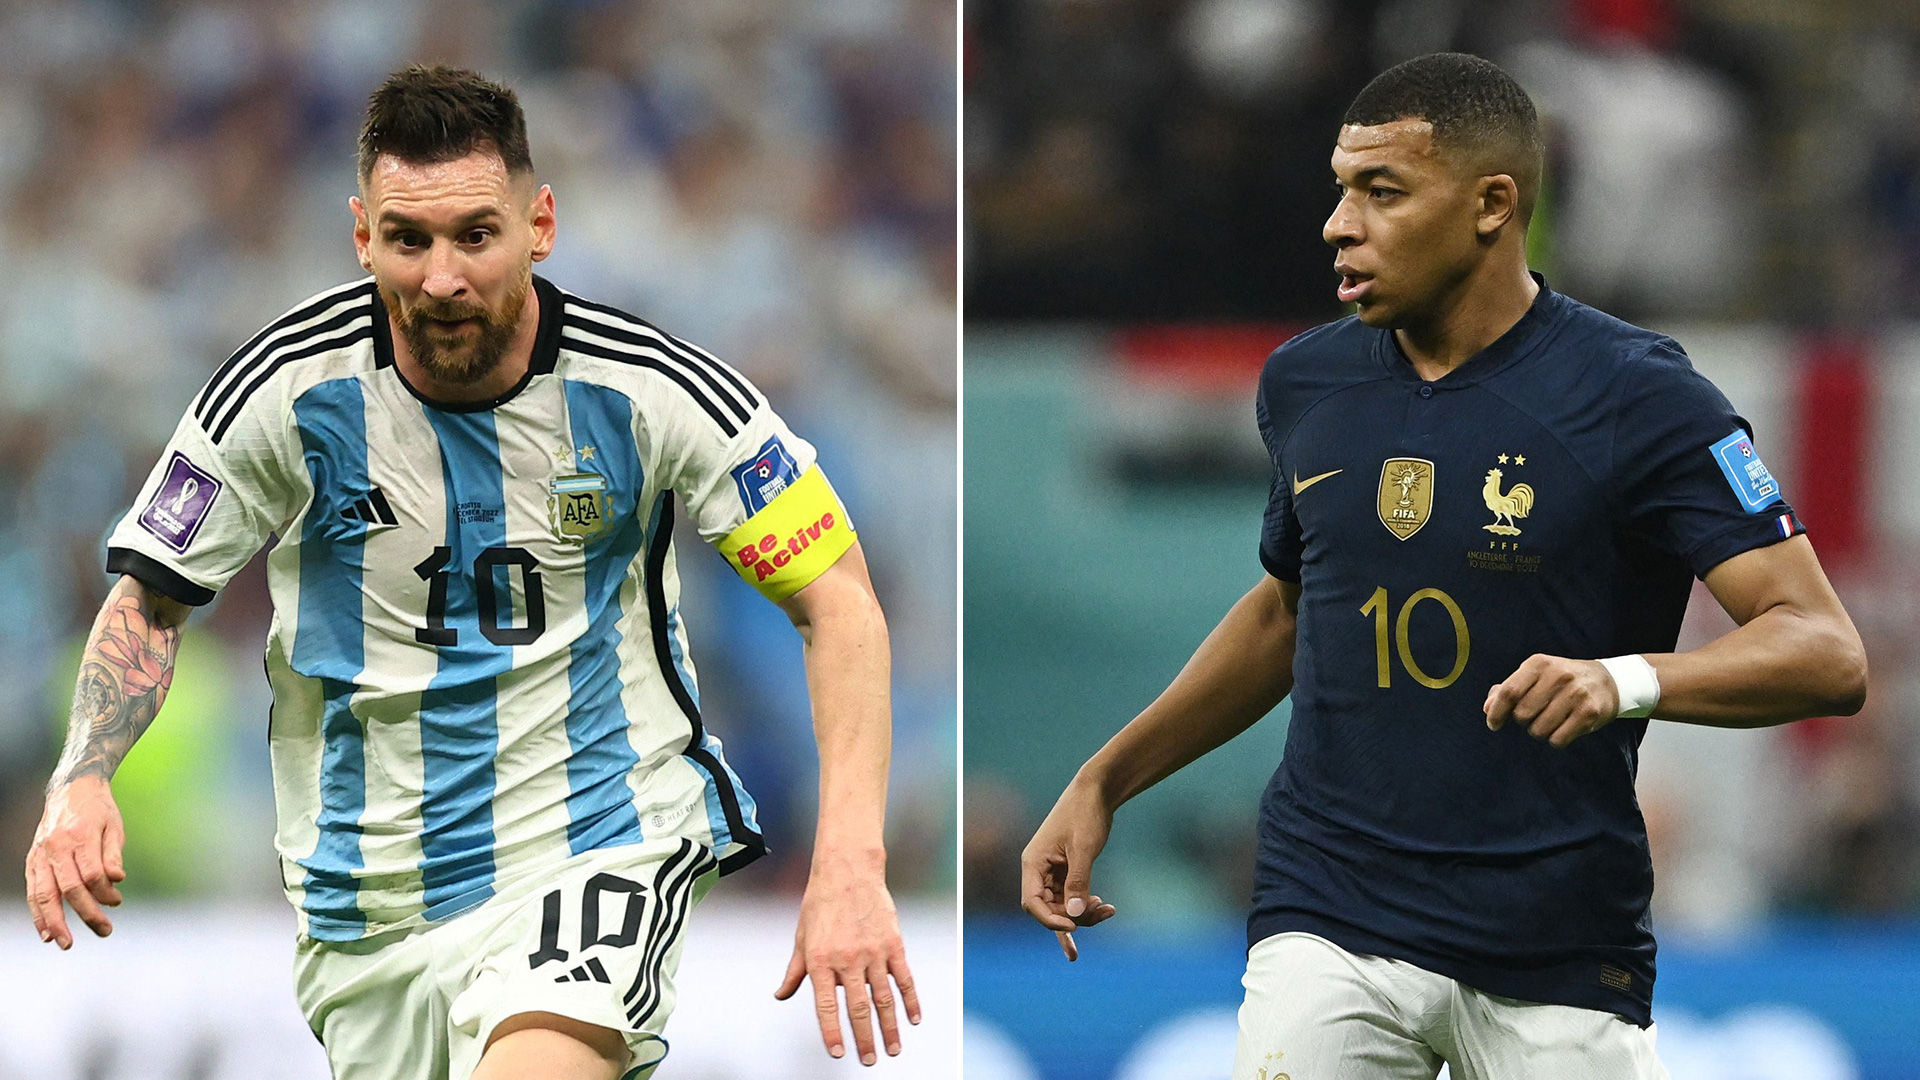 Lionel Messi y Kylian Mbappé jugarán su segunda final en un Mundial. El francés ya levantó la copa y el argentino quiero hacerlo por primera vez este domingo